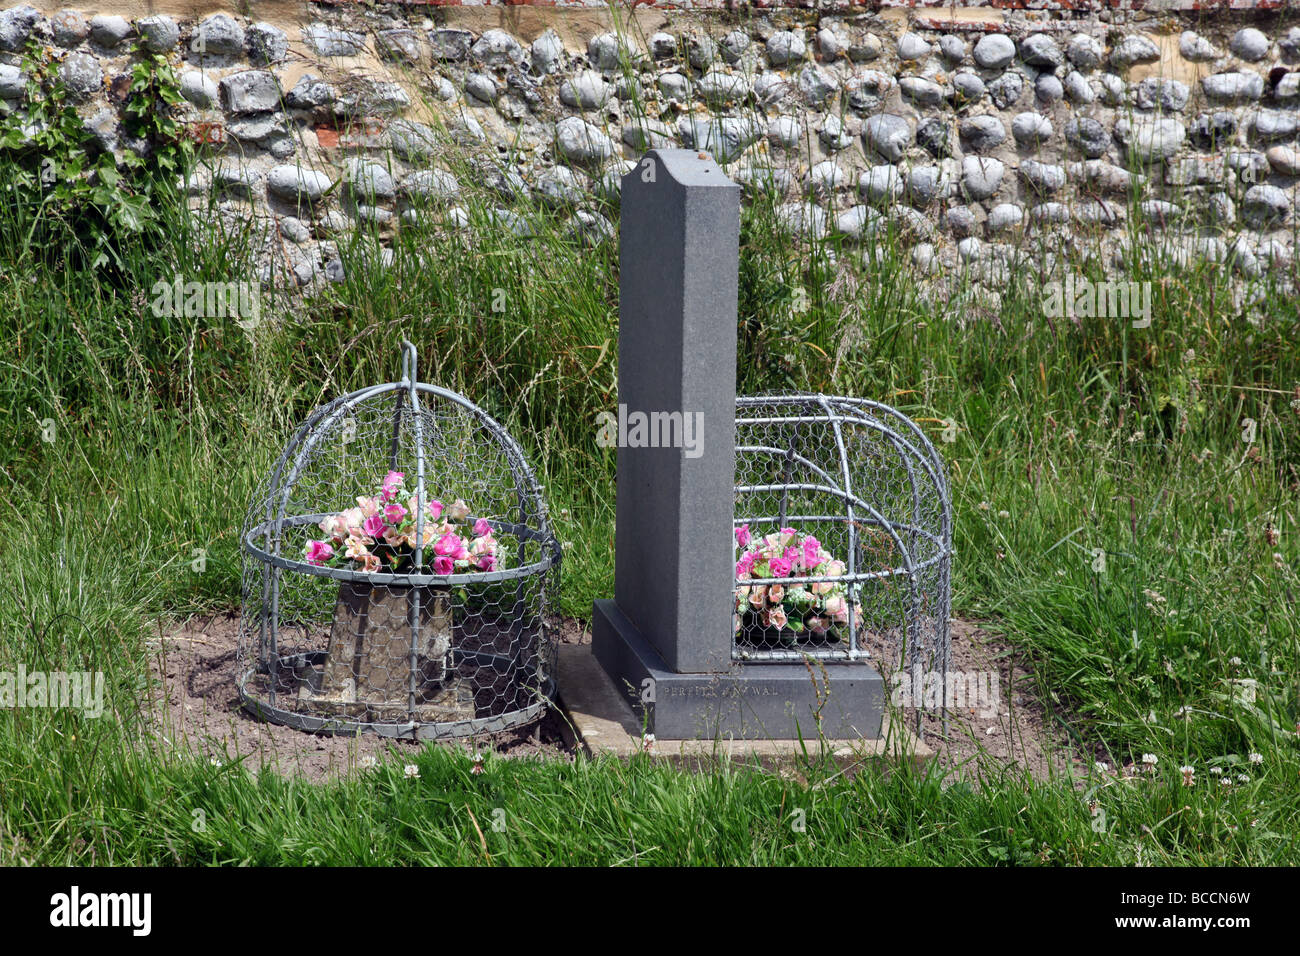 Des fleurs sur une tombe recouverte d'un panier métallique pour les arrêter d'être mangés par les lapins. Banque D'Images